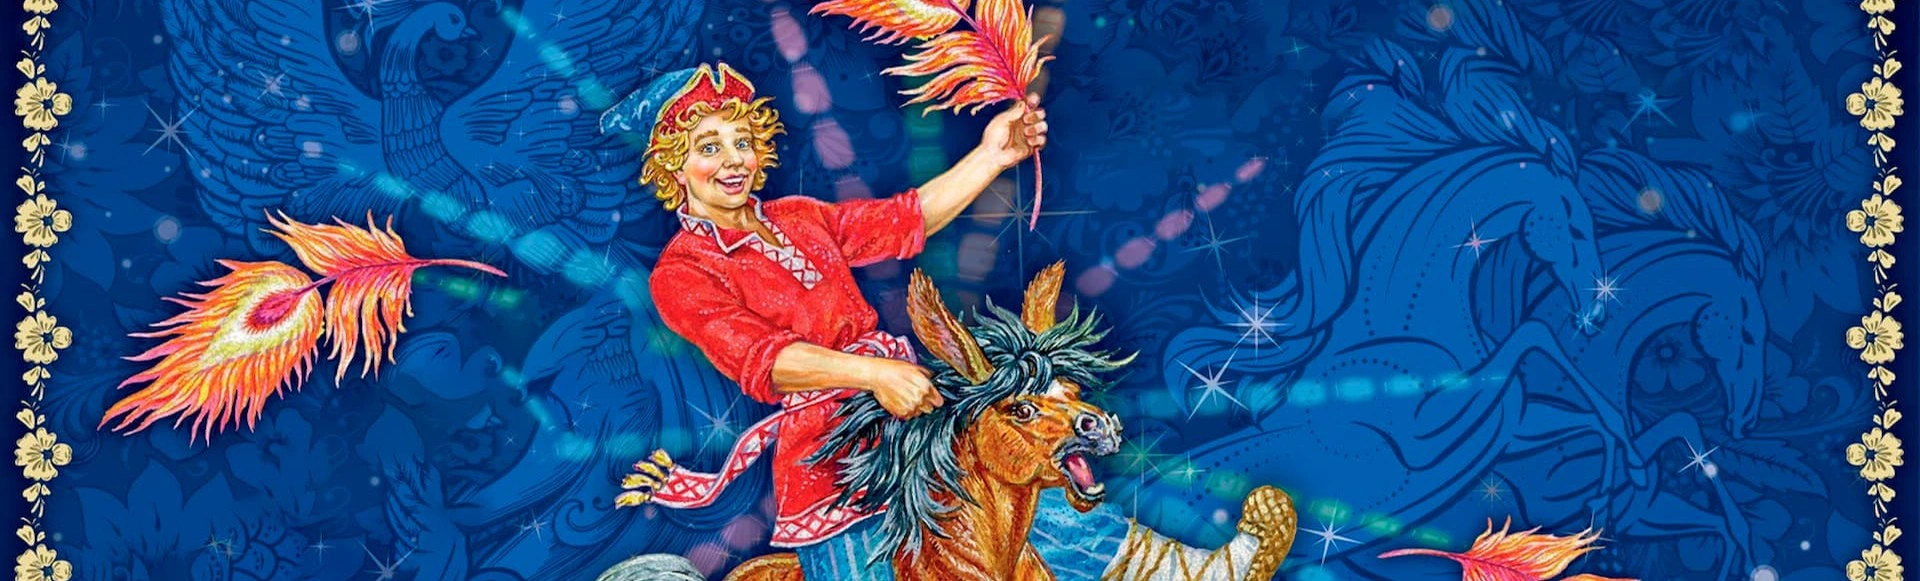 Уникальное событие для всей семьи: спектакль «Конёк-Горбунок» в Цирке Никулина!